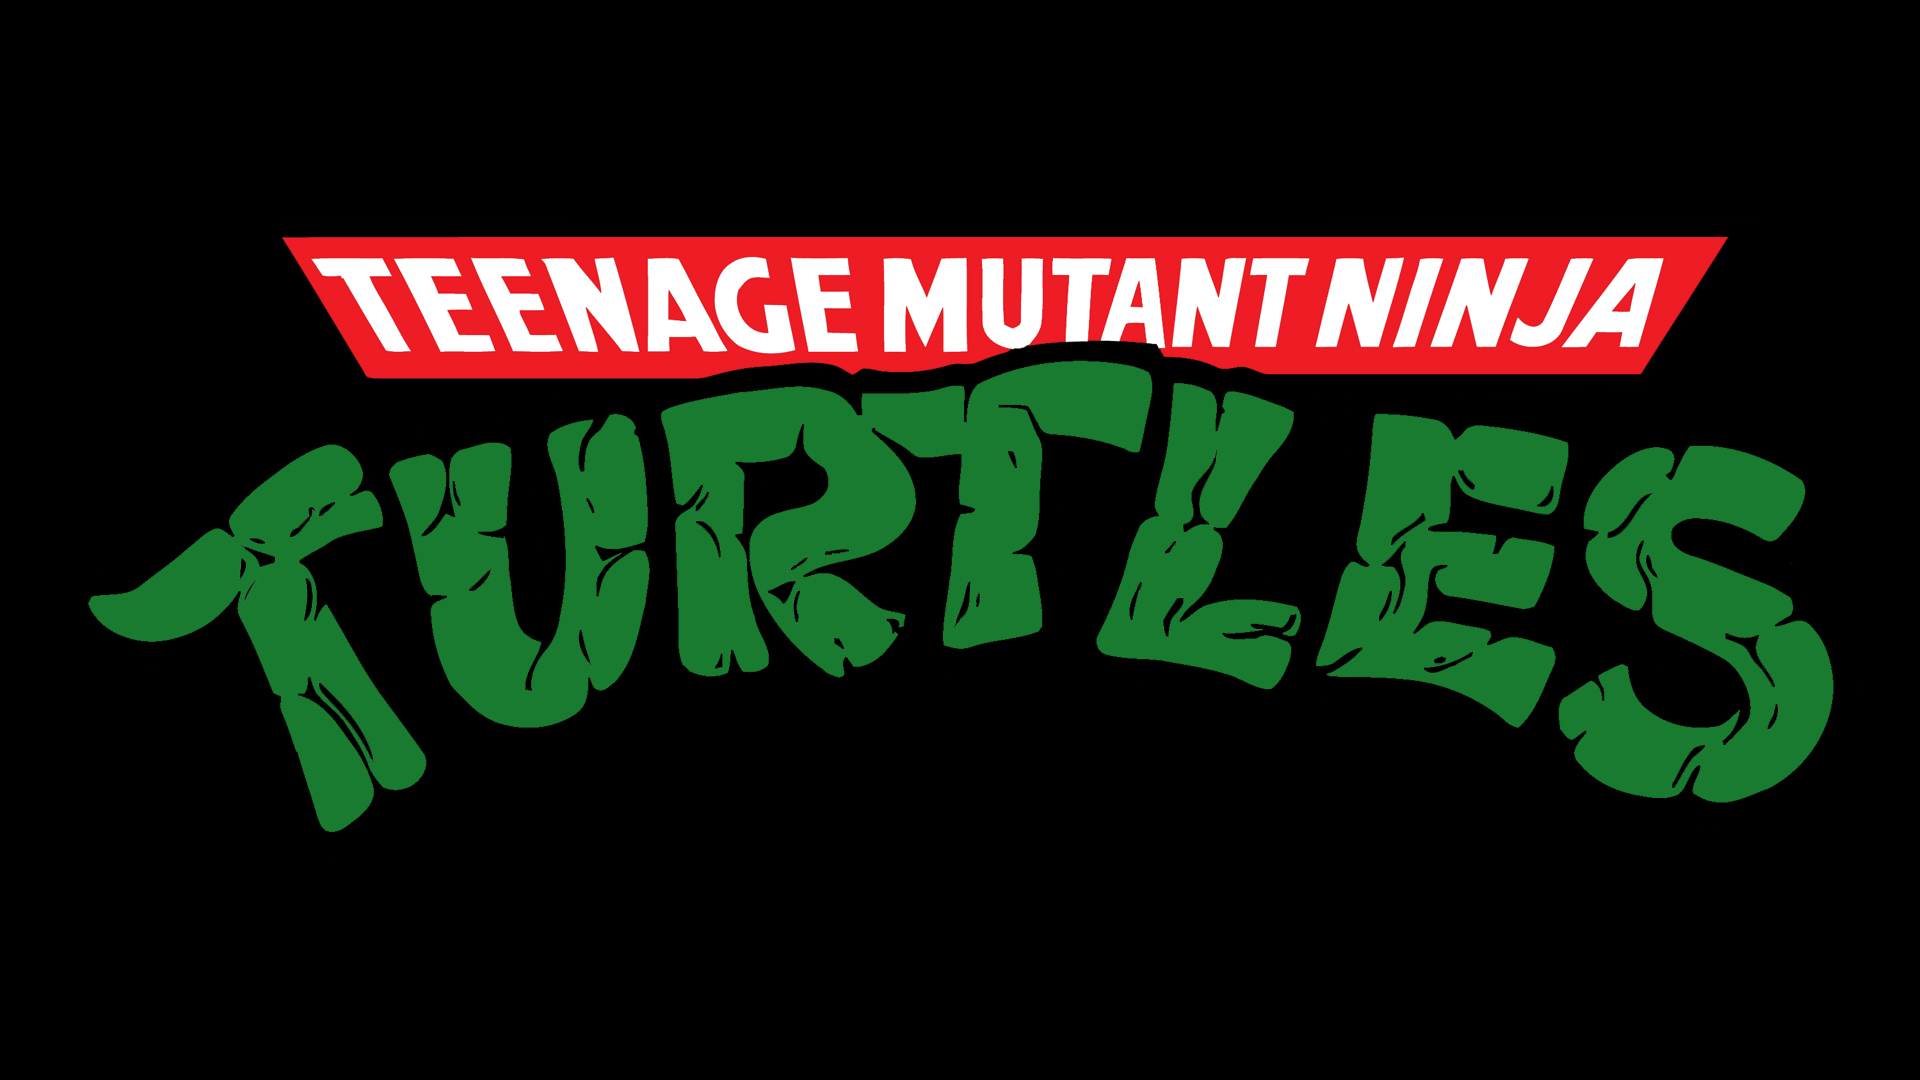 Teenage mutant ninja turtle wallpapers